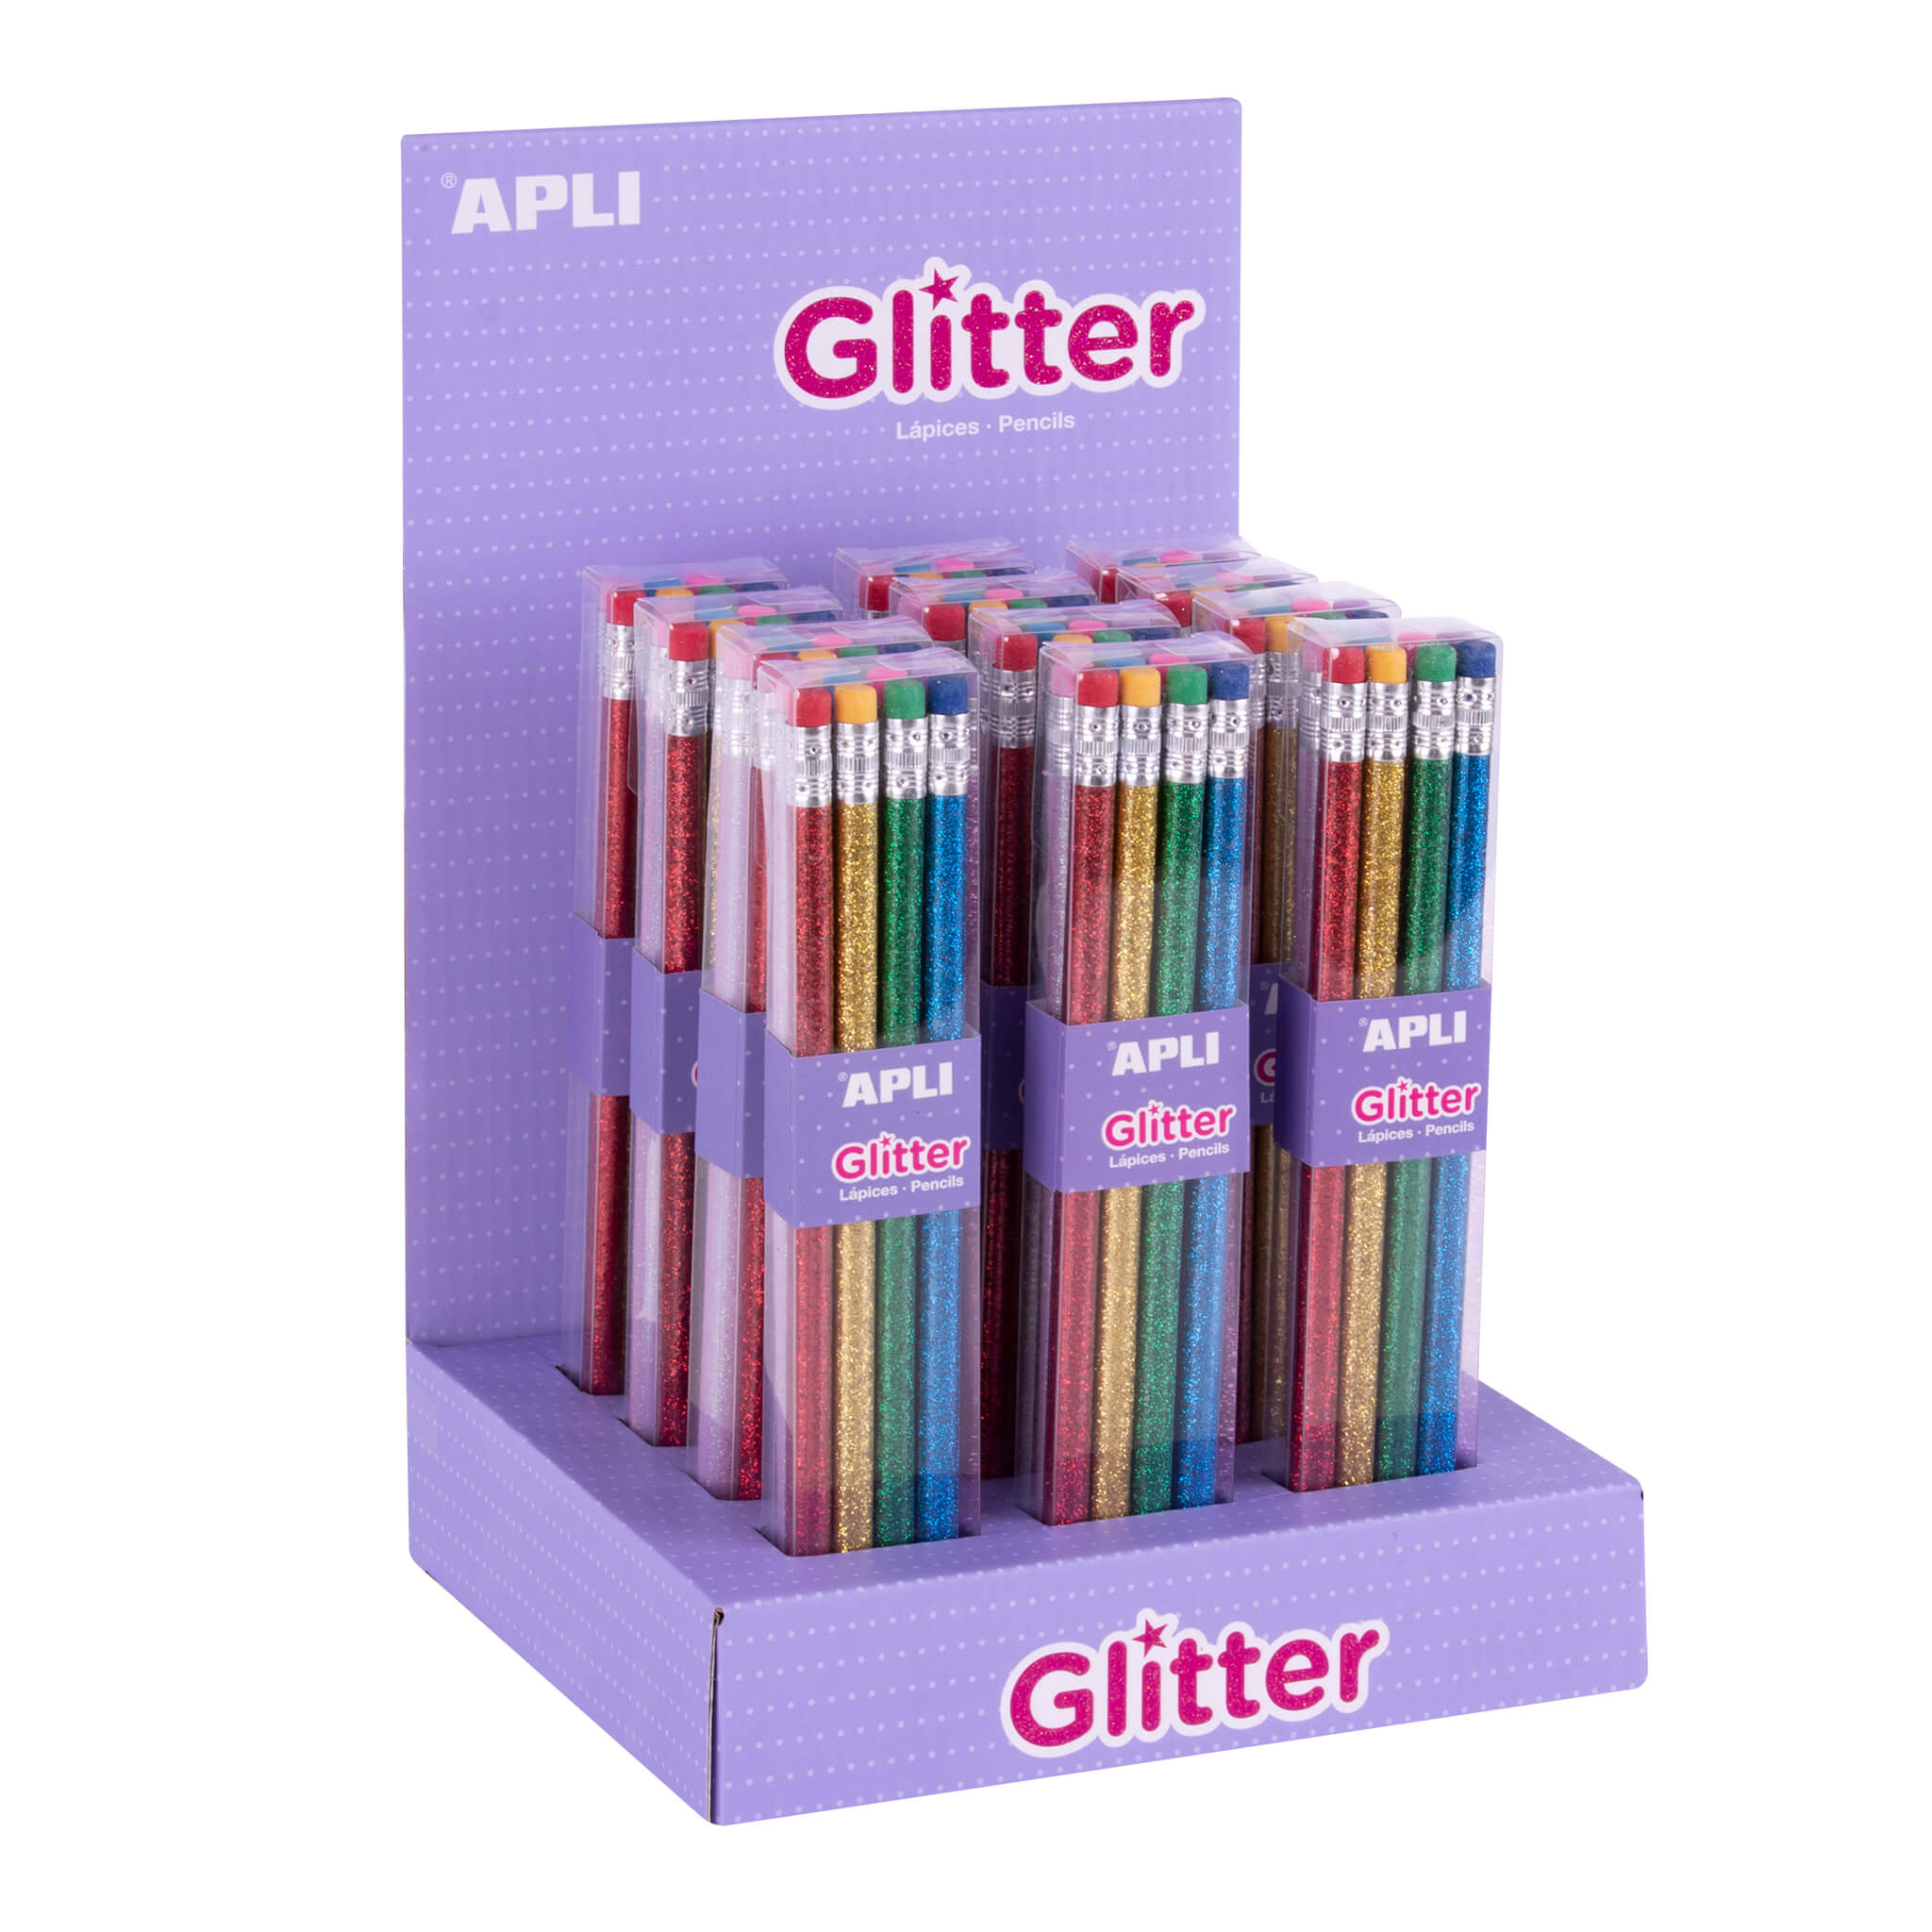 Apli Glitter Collection Lapices de Grafito con Goma - 2mm HB - 12 Packs de 8 Lapices - 8 Colores Pur